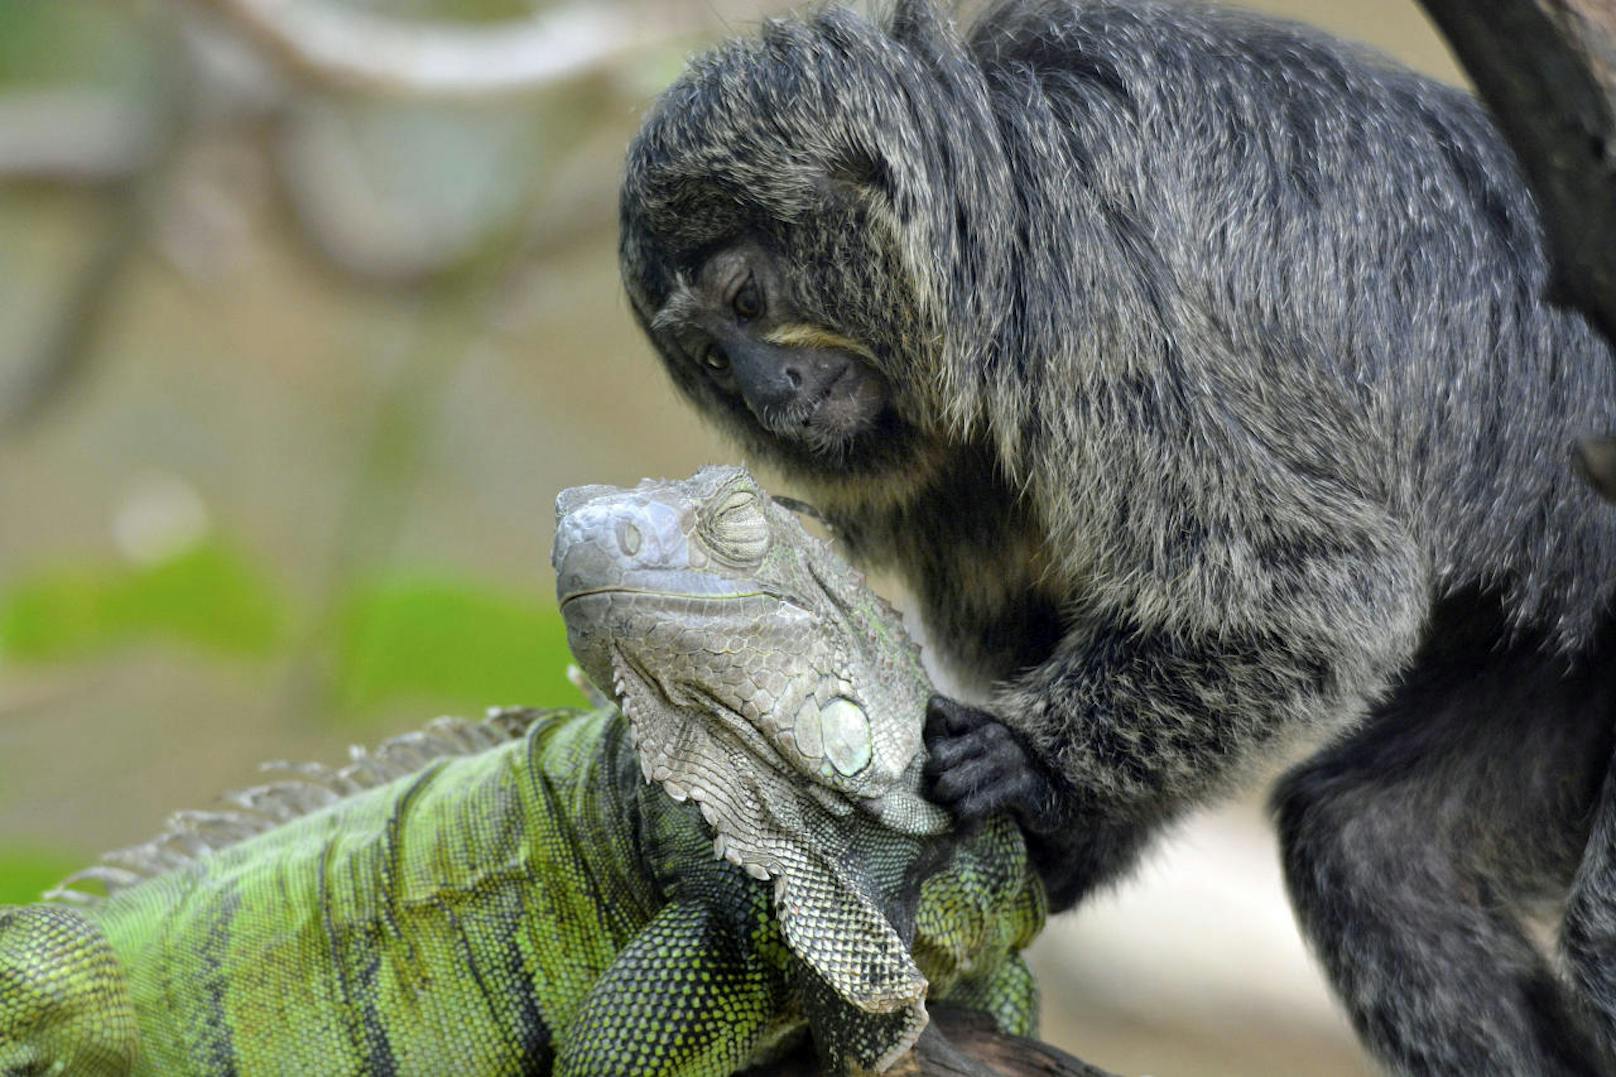 Irgendwann scheint der neugierige Affe seinem Kumpel auch eine kleine Massage zu geben, so wie sie es mit einem anderen Primaten tun würde.